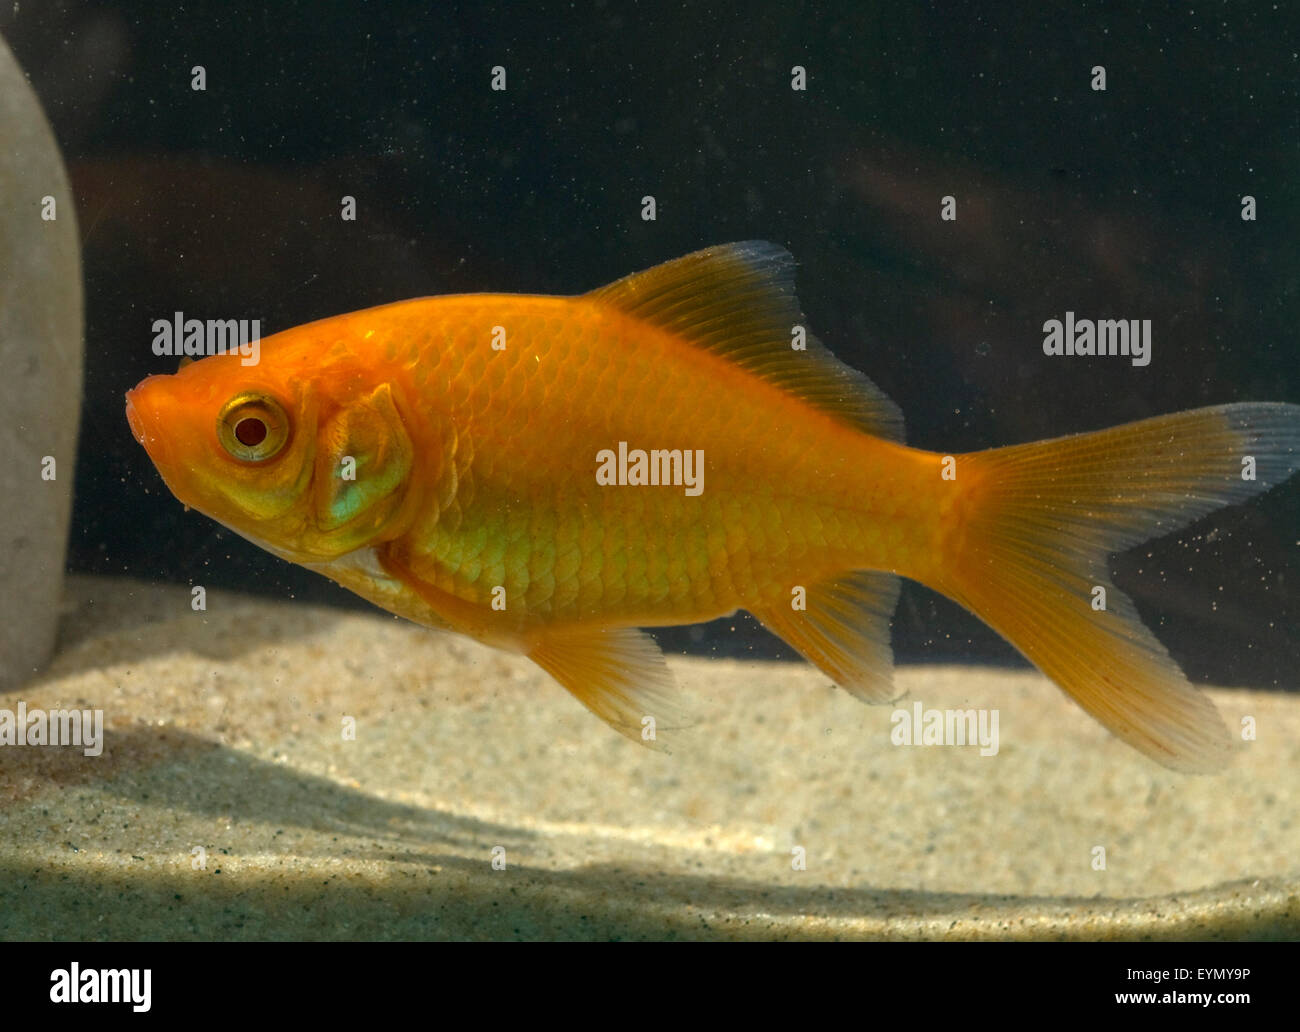 Goldfisch, Carassius auratus, auratus, Karpfenfisch, Stock Photo